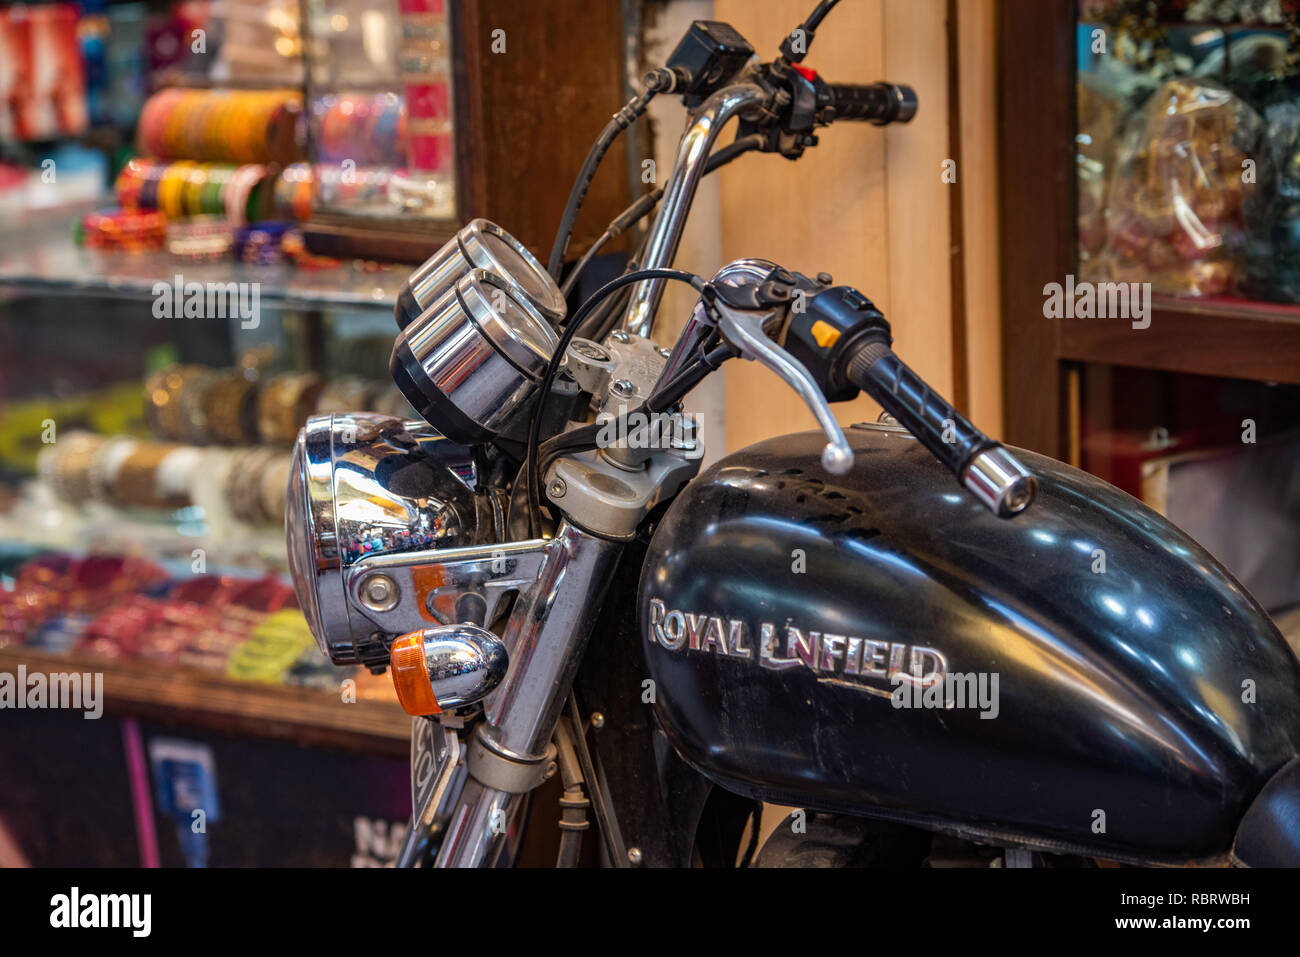 A Royal Enfield Bullet Motorcycle in Varanasi, India. Stock Photo